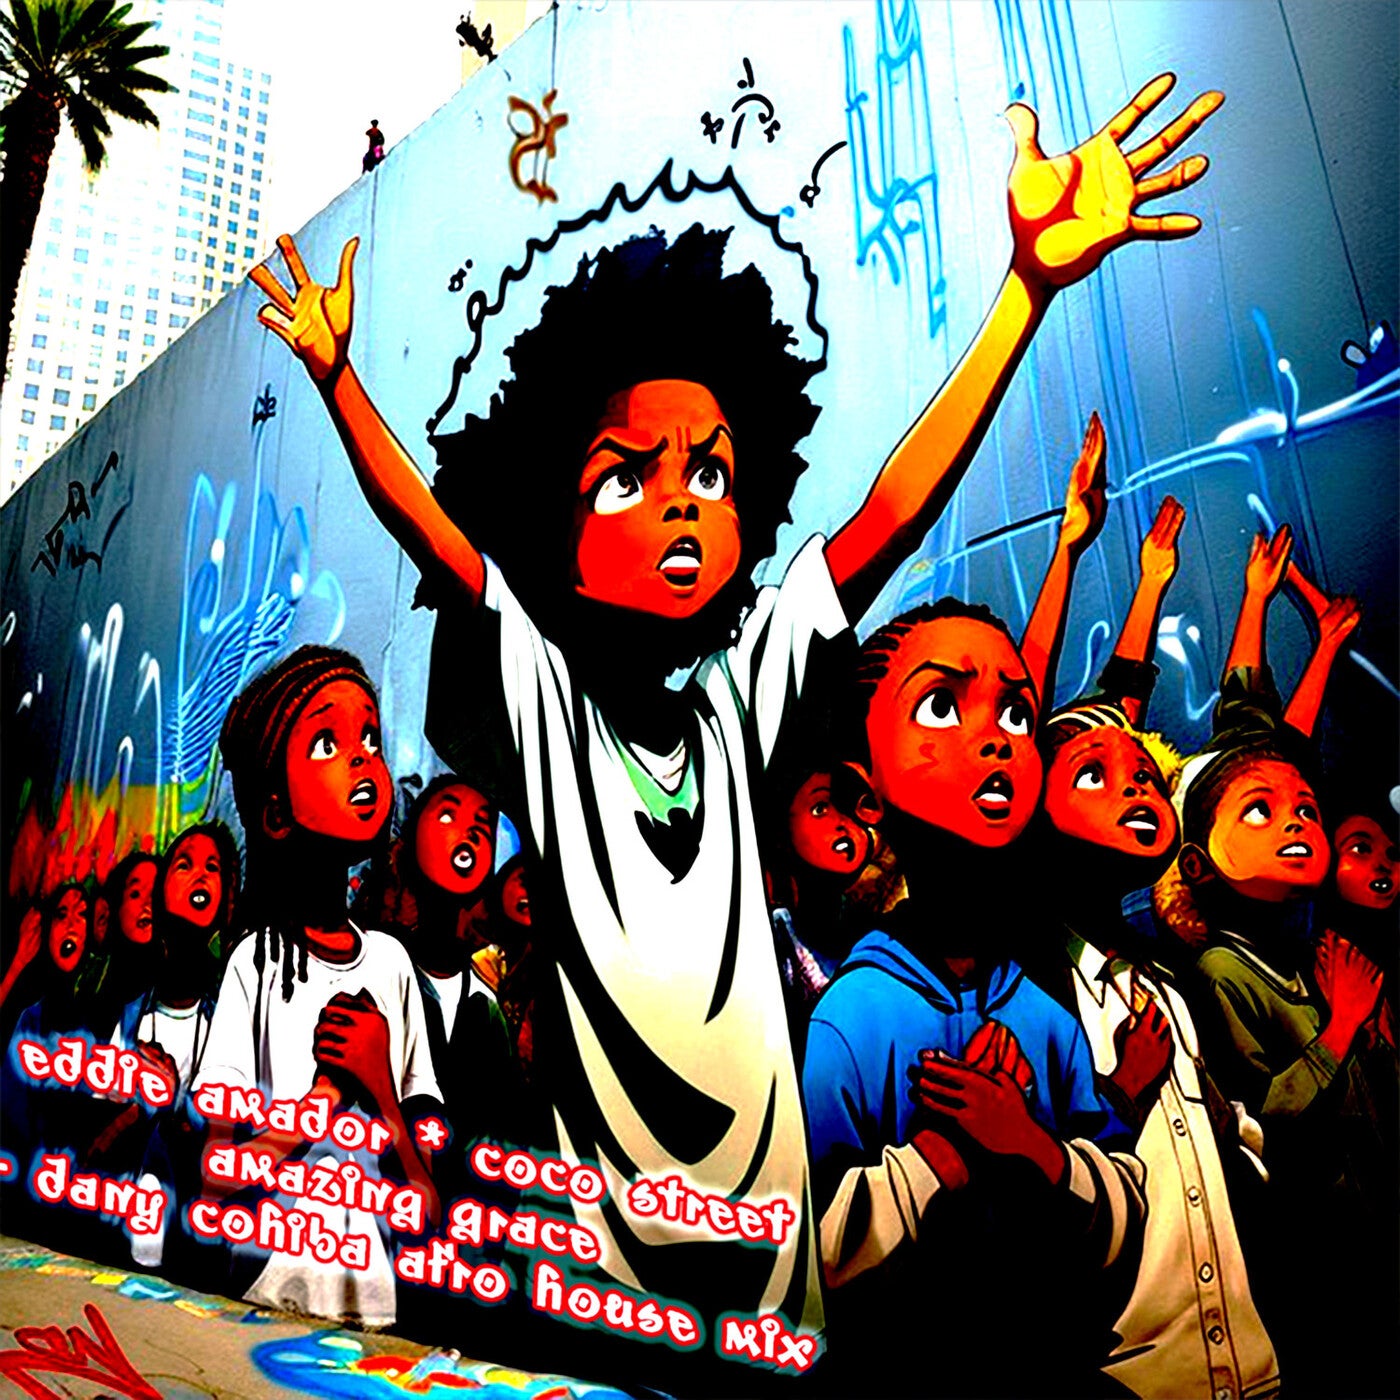 Amazing Grace (Dany Cohiba Afro House Mix)